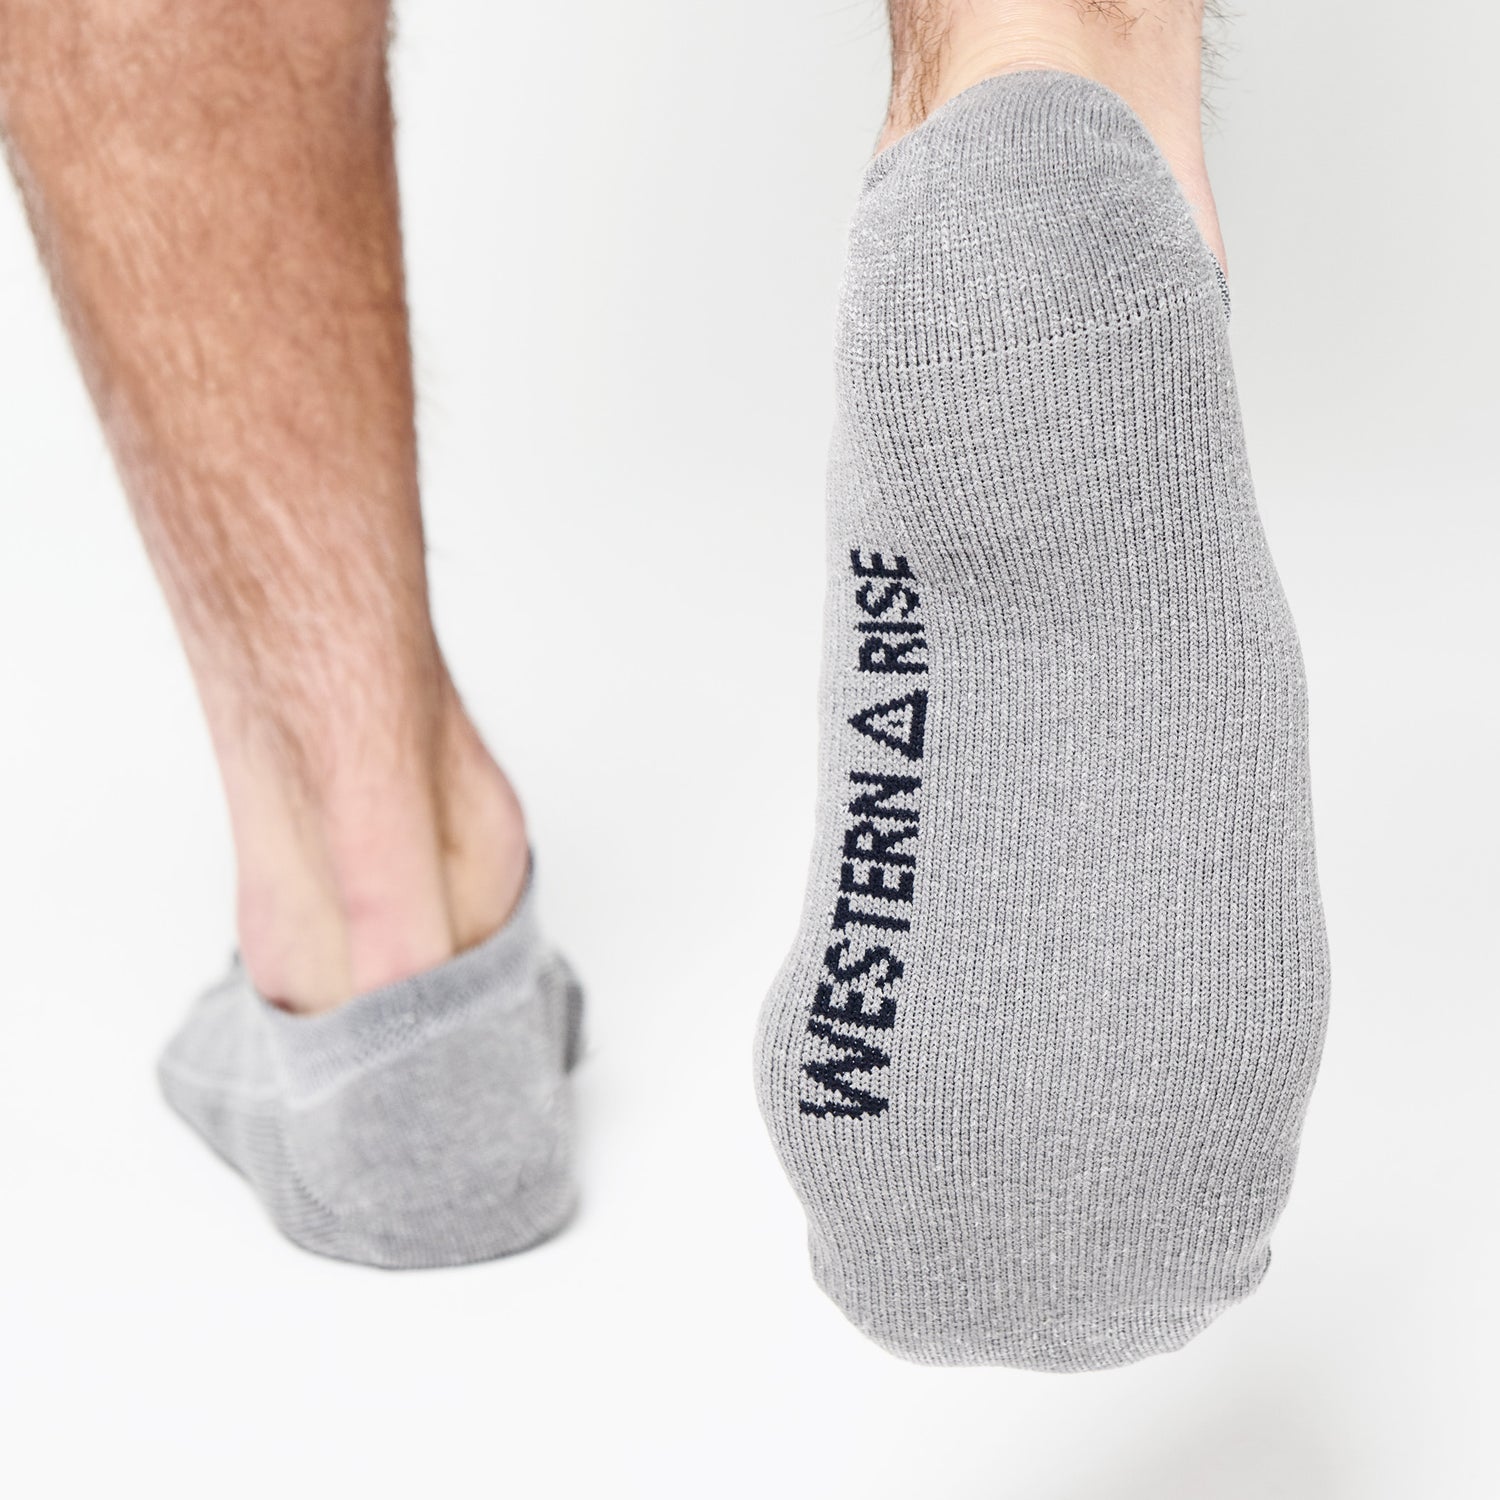 The Best Moisture-Wicking Socks of 2021